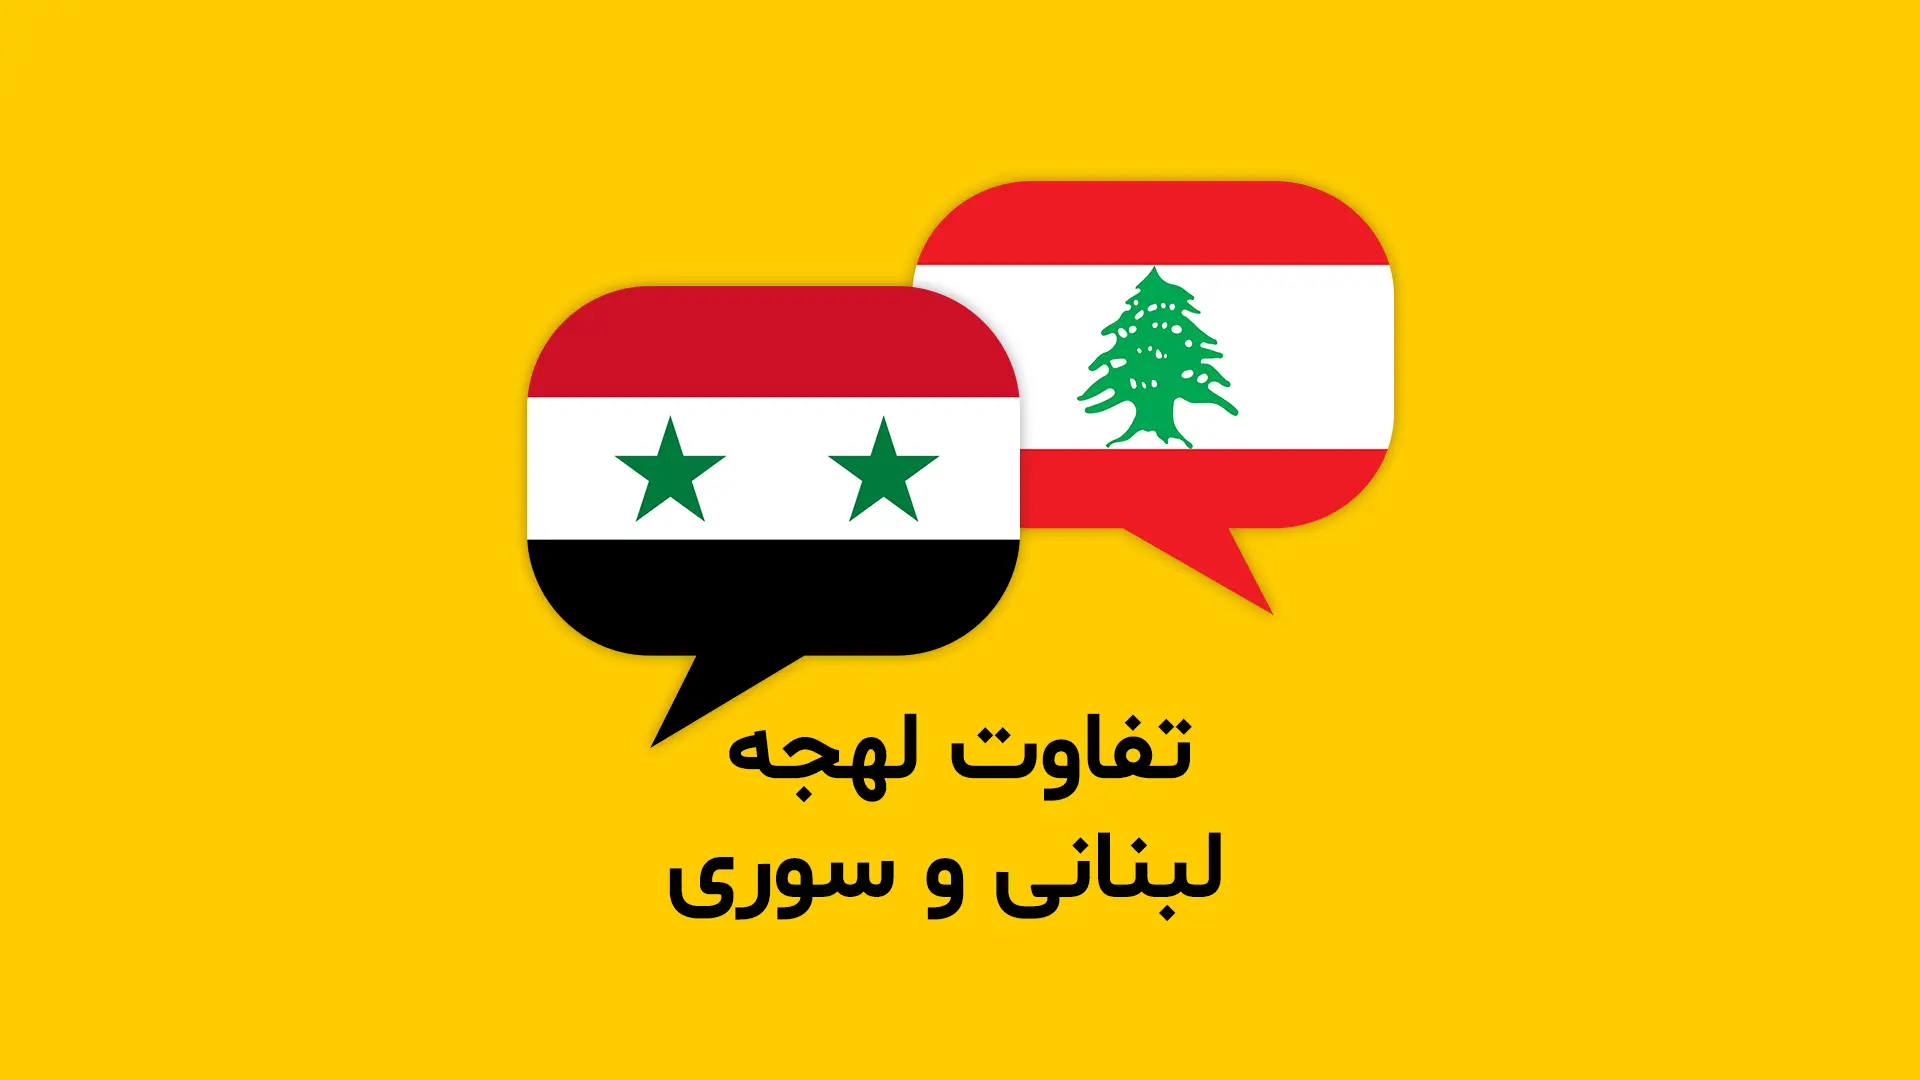 تفاوت بین لهجه لبنانی و سوری + مثال